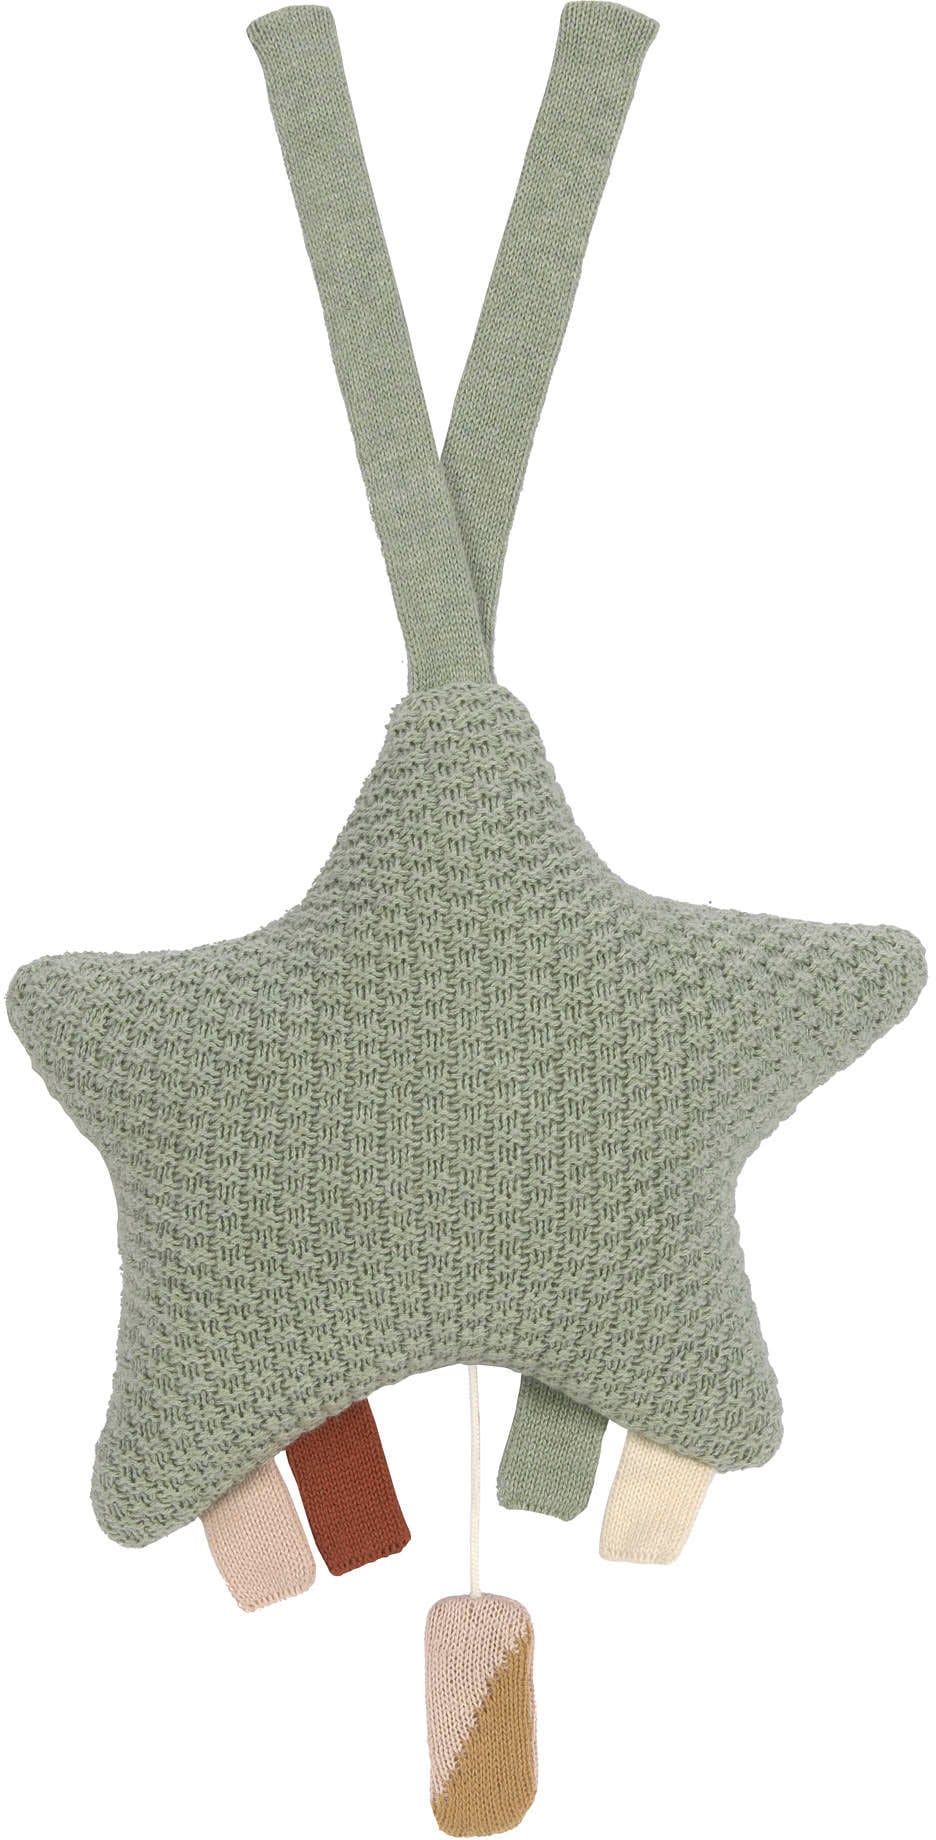 Spieluhr »Musical Star, green«, aus recyceltem Material